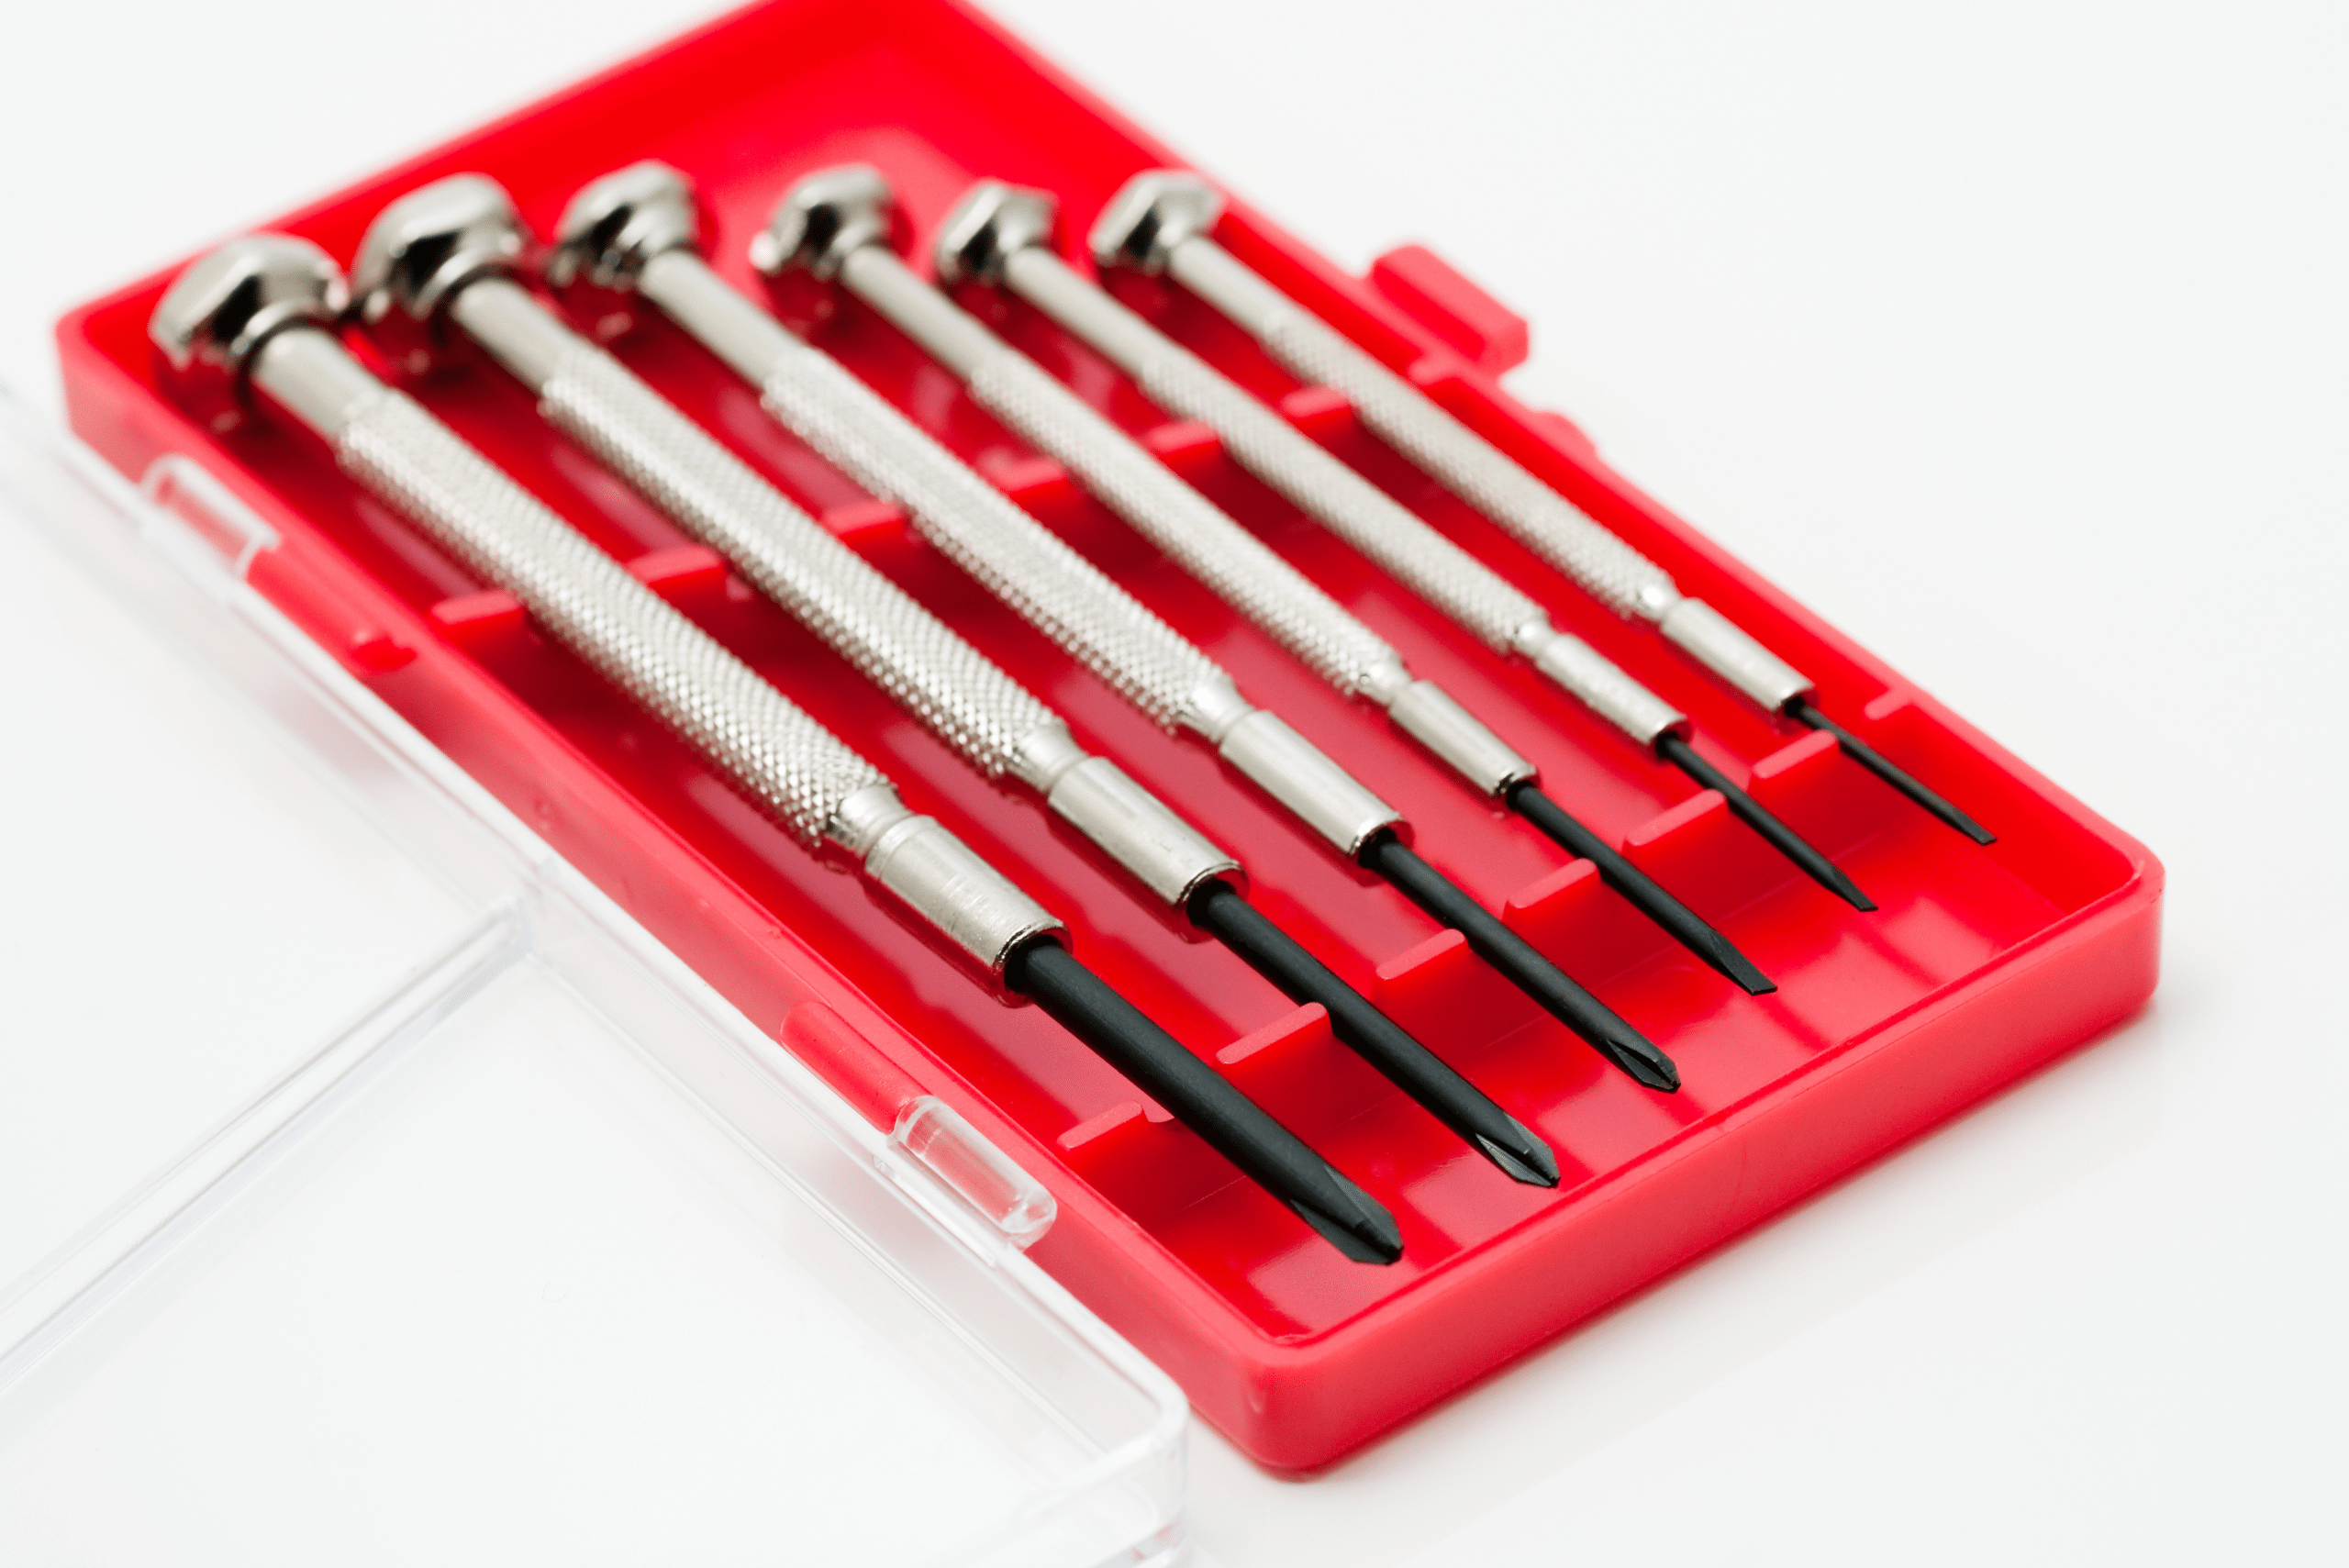 Precision screwdriver set in a red case.